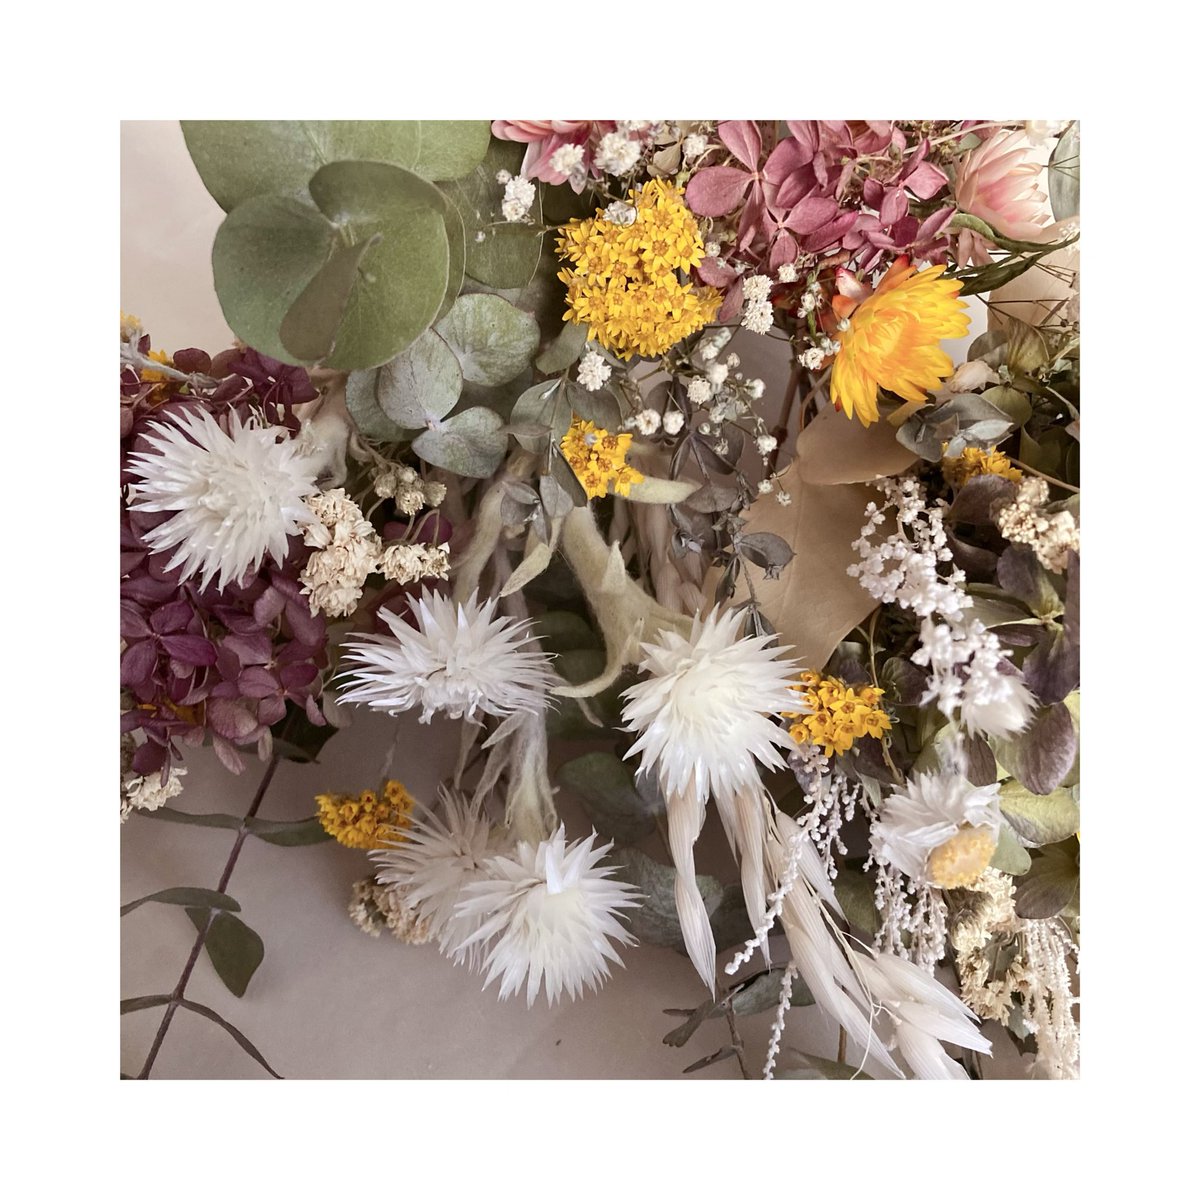 ドライフラワー スワッグ❁¨̮⑧ 紫陽花 ラベンダー ボタニカル 花束♪